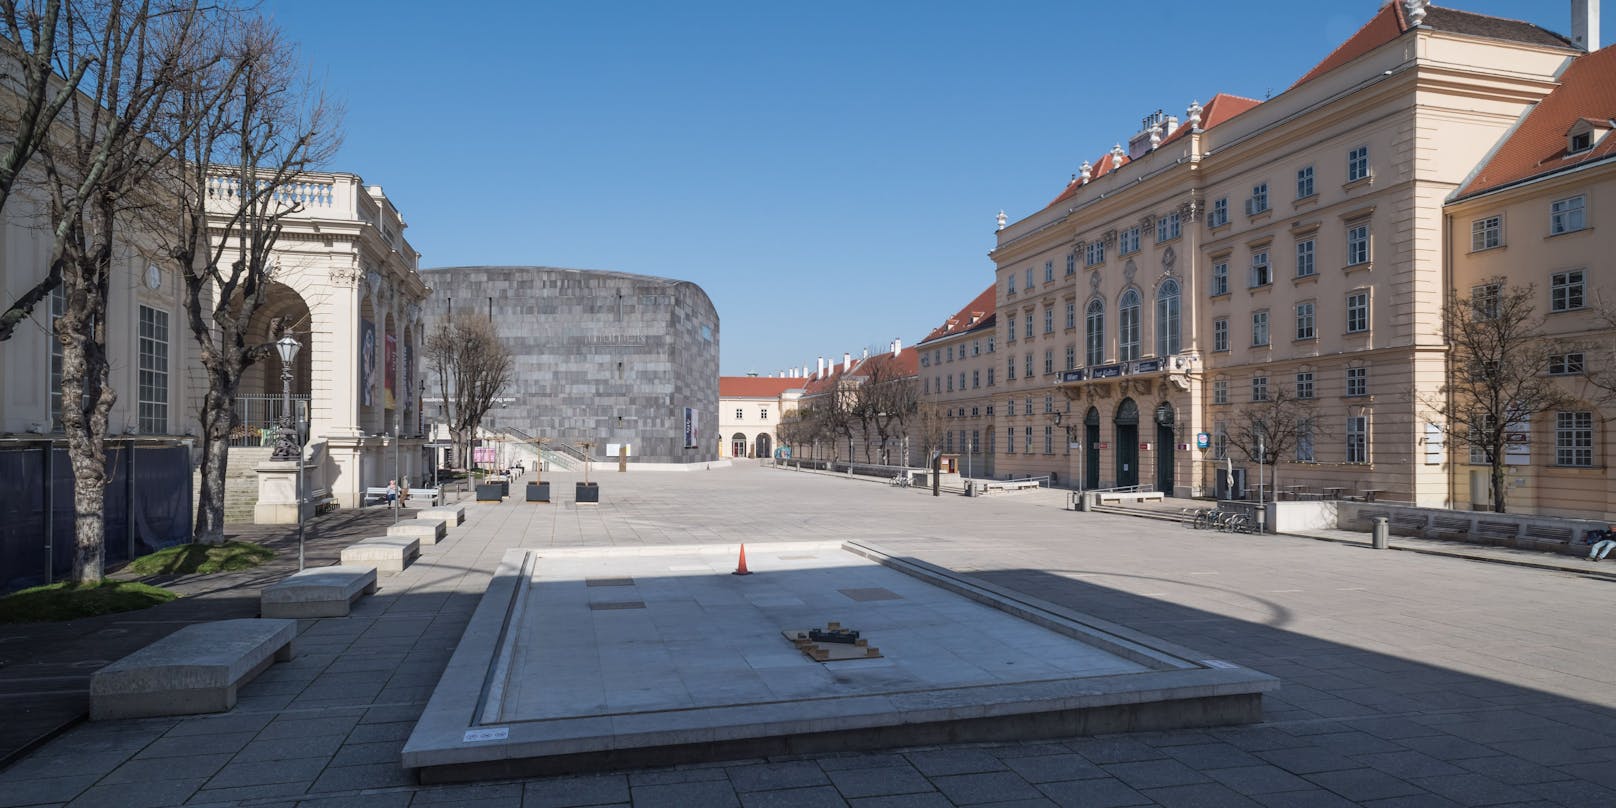 Blick ins Museumquartier in Wien: Vorsichtige Öffnung nach dem Lockdown